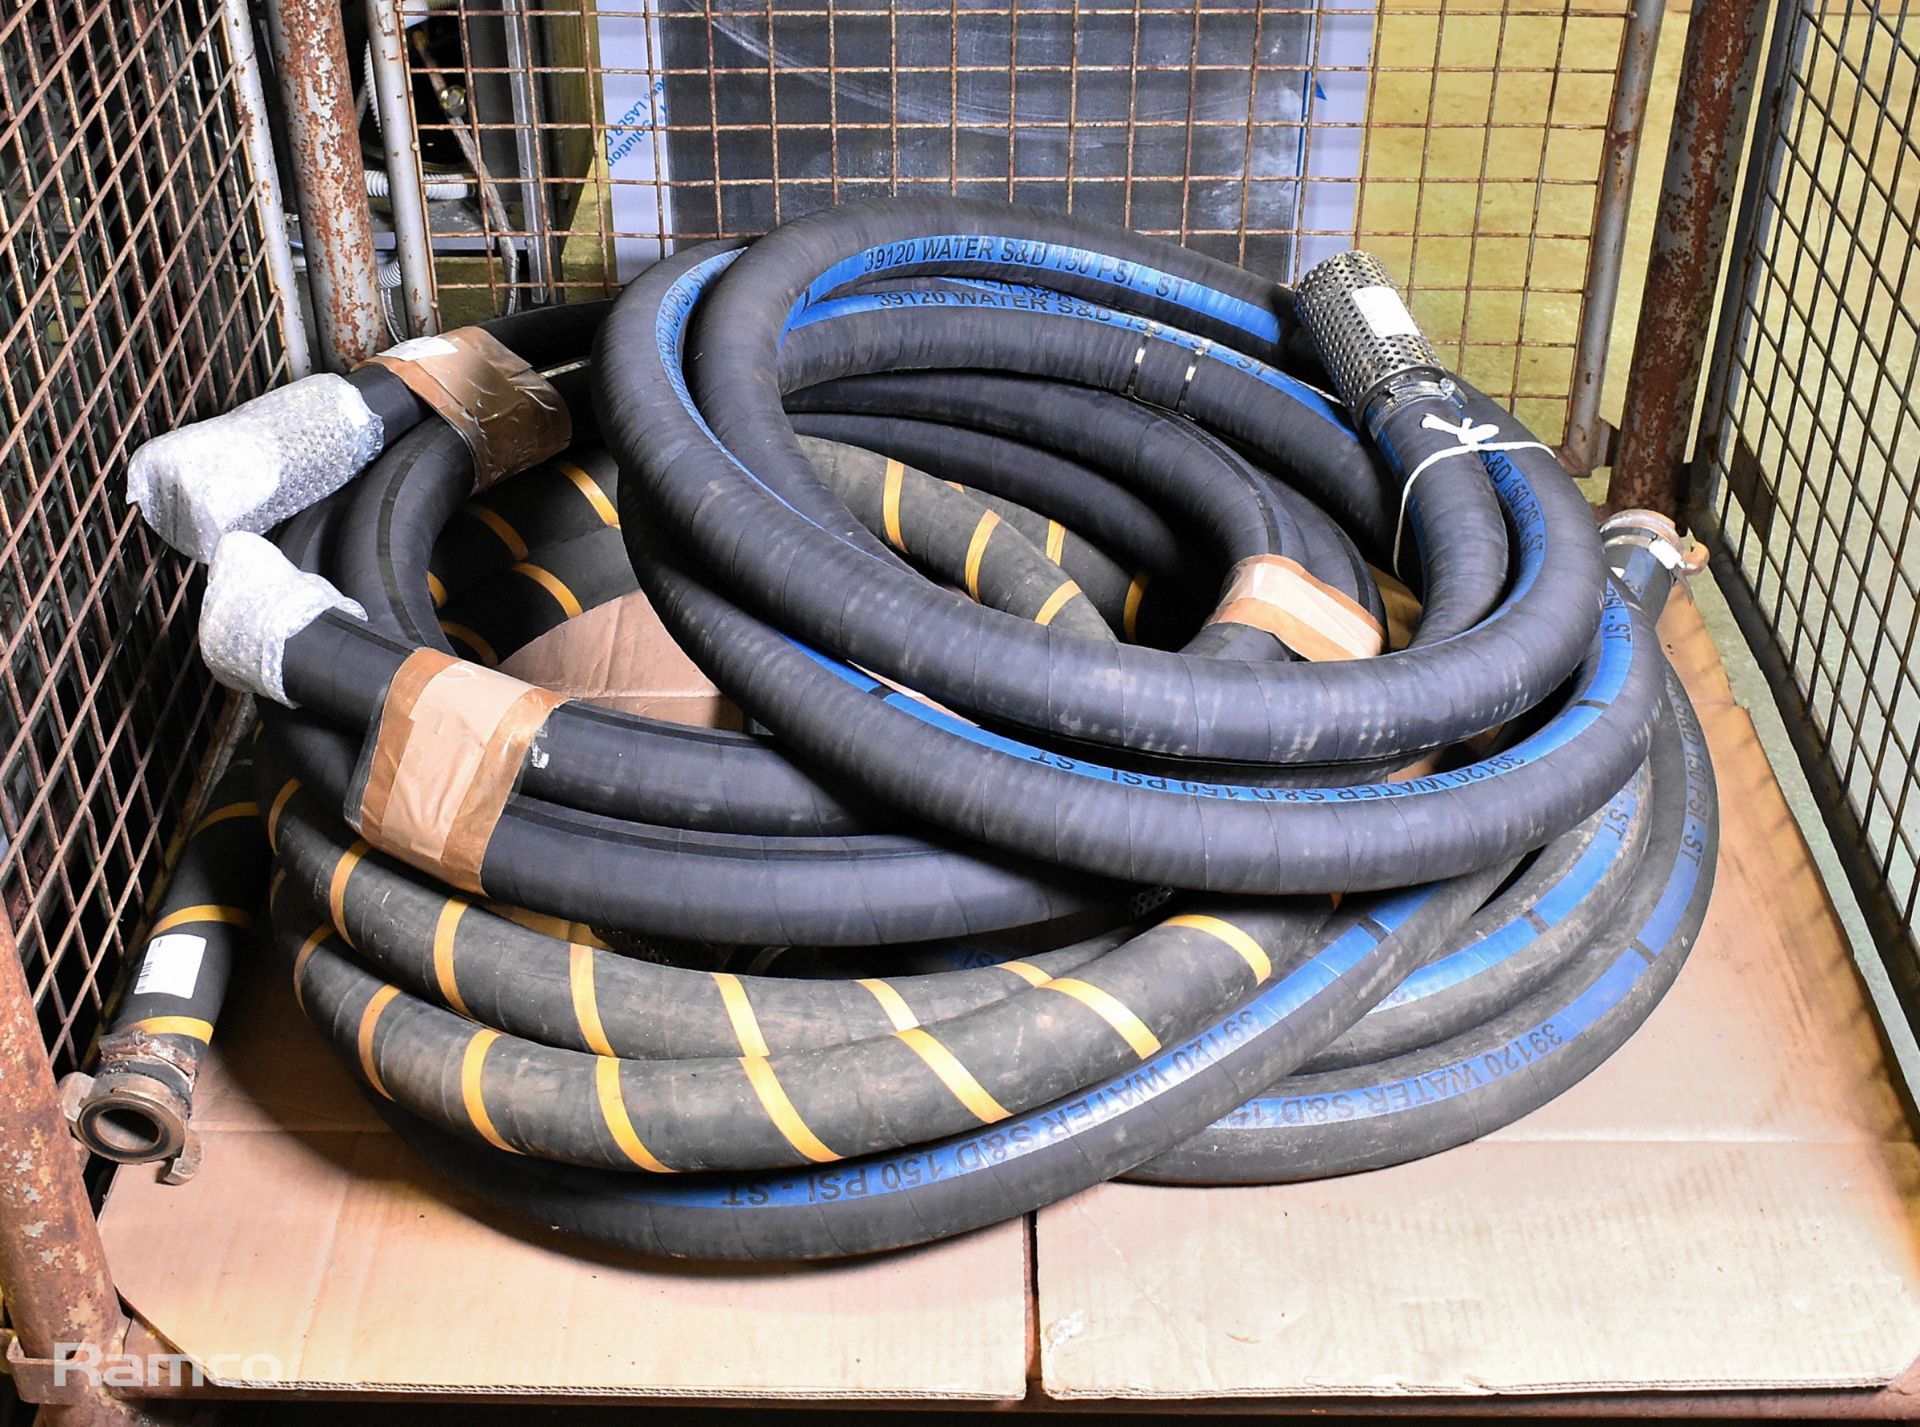 4x 2 inch rubber hose assemblies - approx length 5m